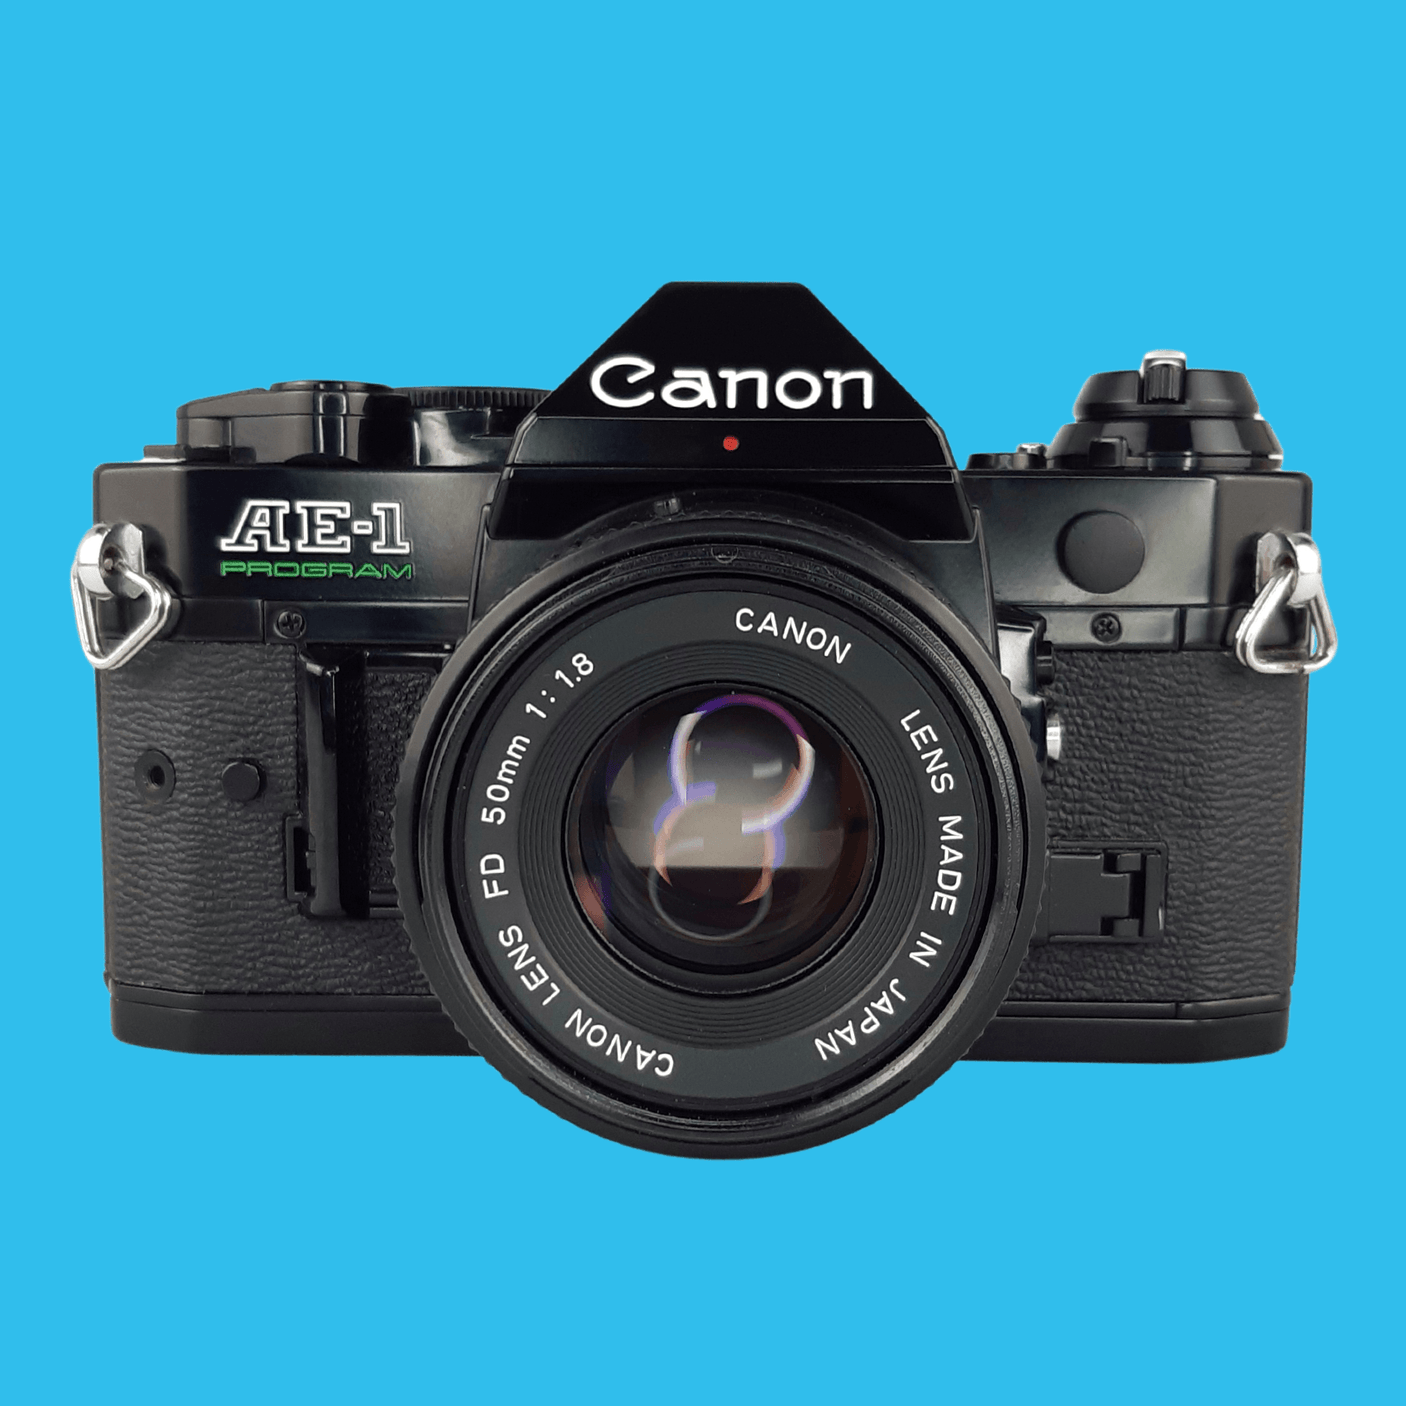 レビュー高評価のおせち贈り物 Canon AE-1 PROGRAM ブラックボディ ...